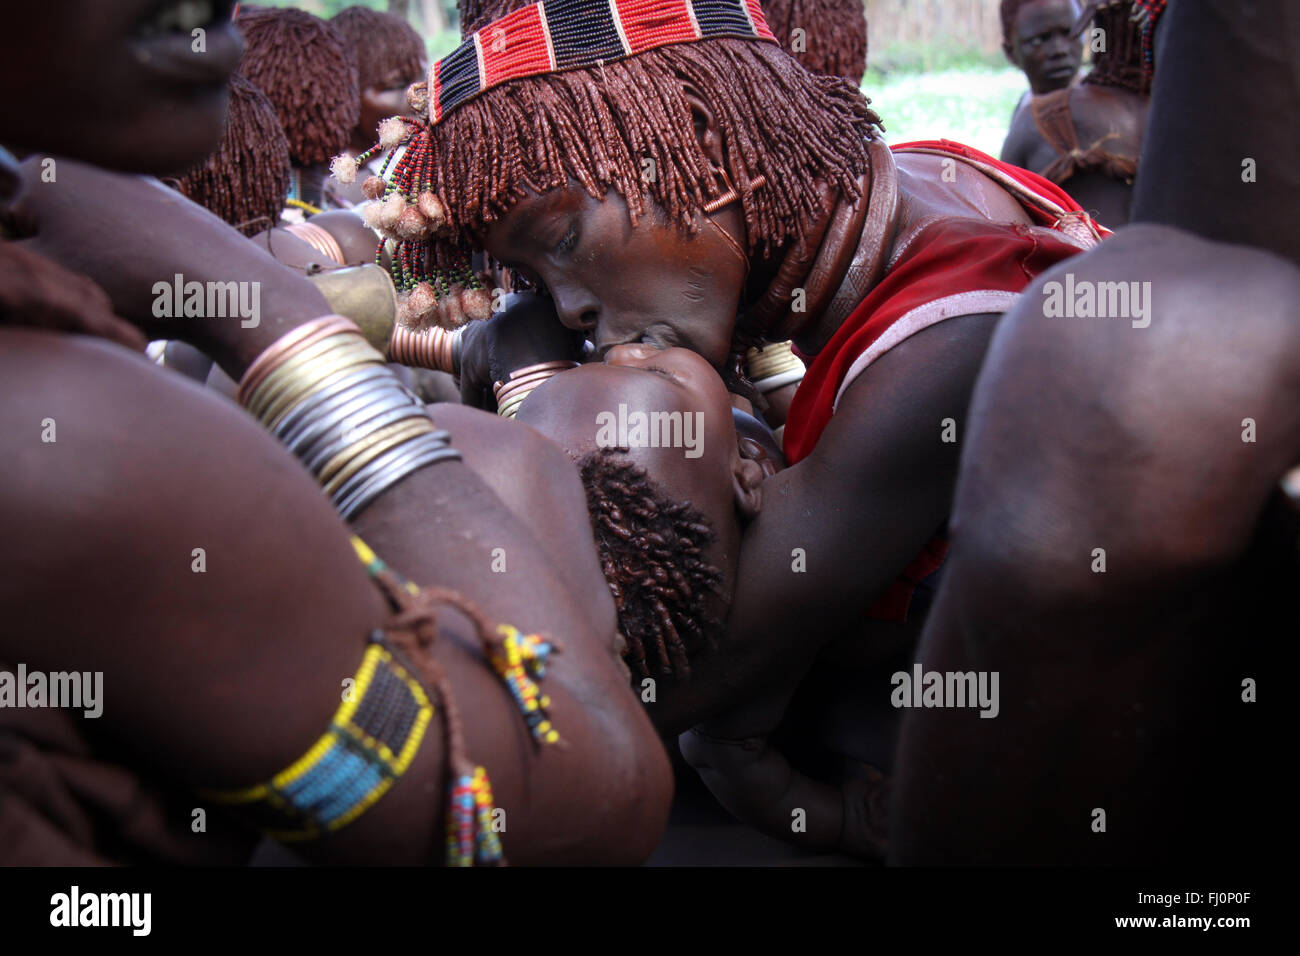 Une mère embrasse son enfant lors d'une cérémonie organisée par les tribus hamer en vallée de l'Omo, en Éthiopie, près de Turmi Banque D'Images